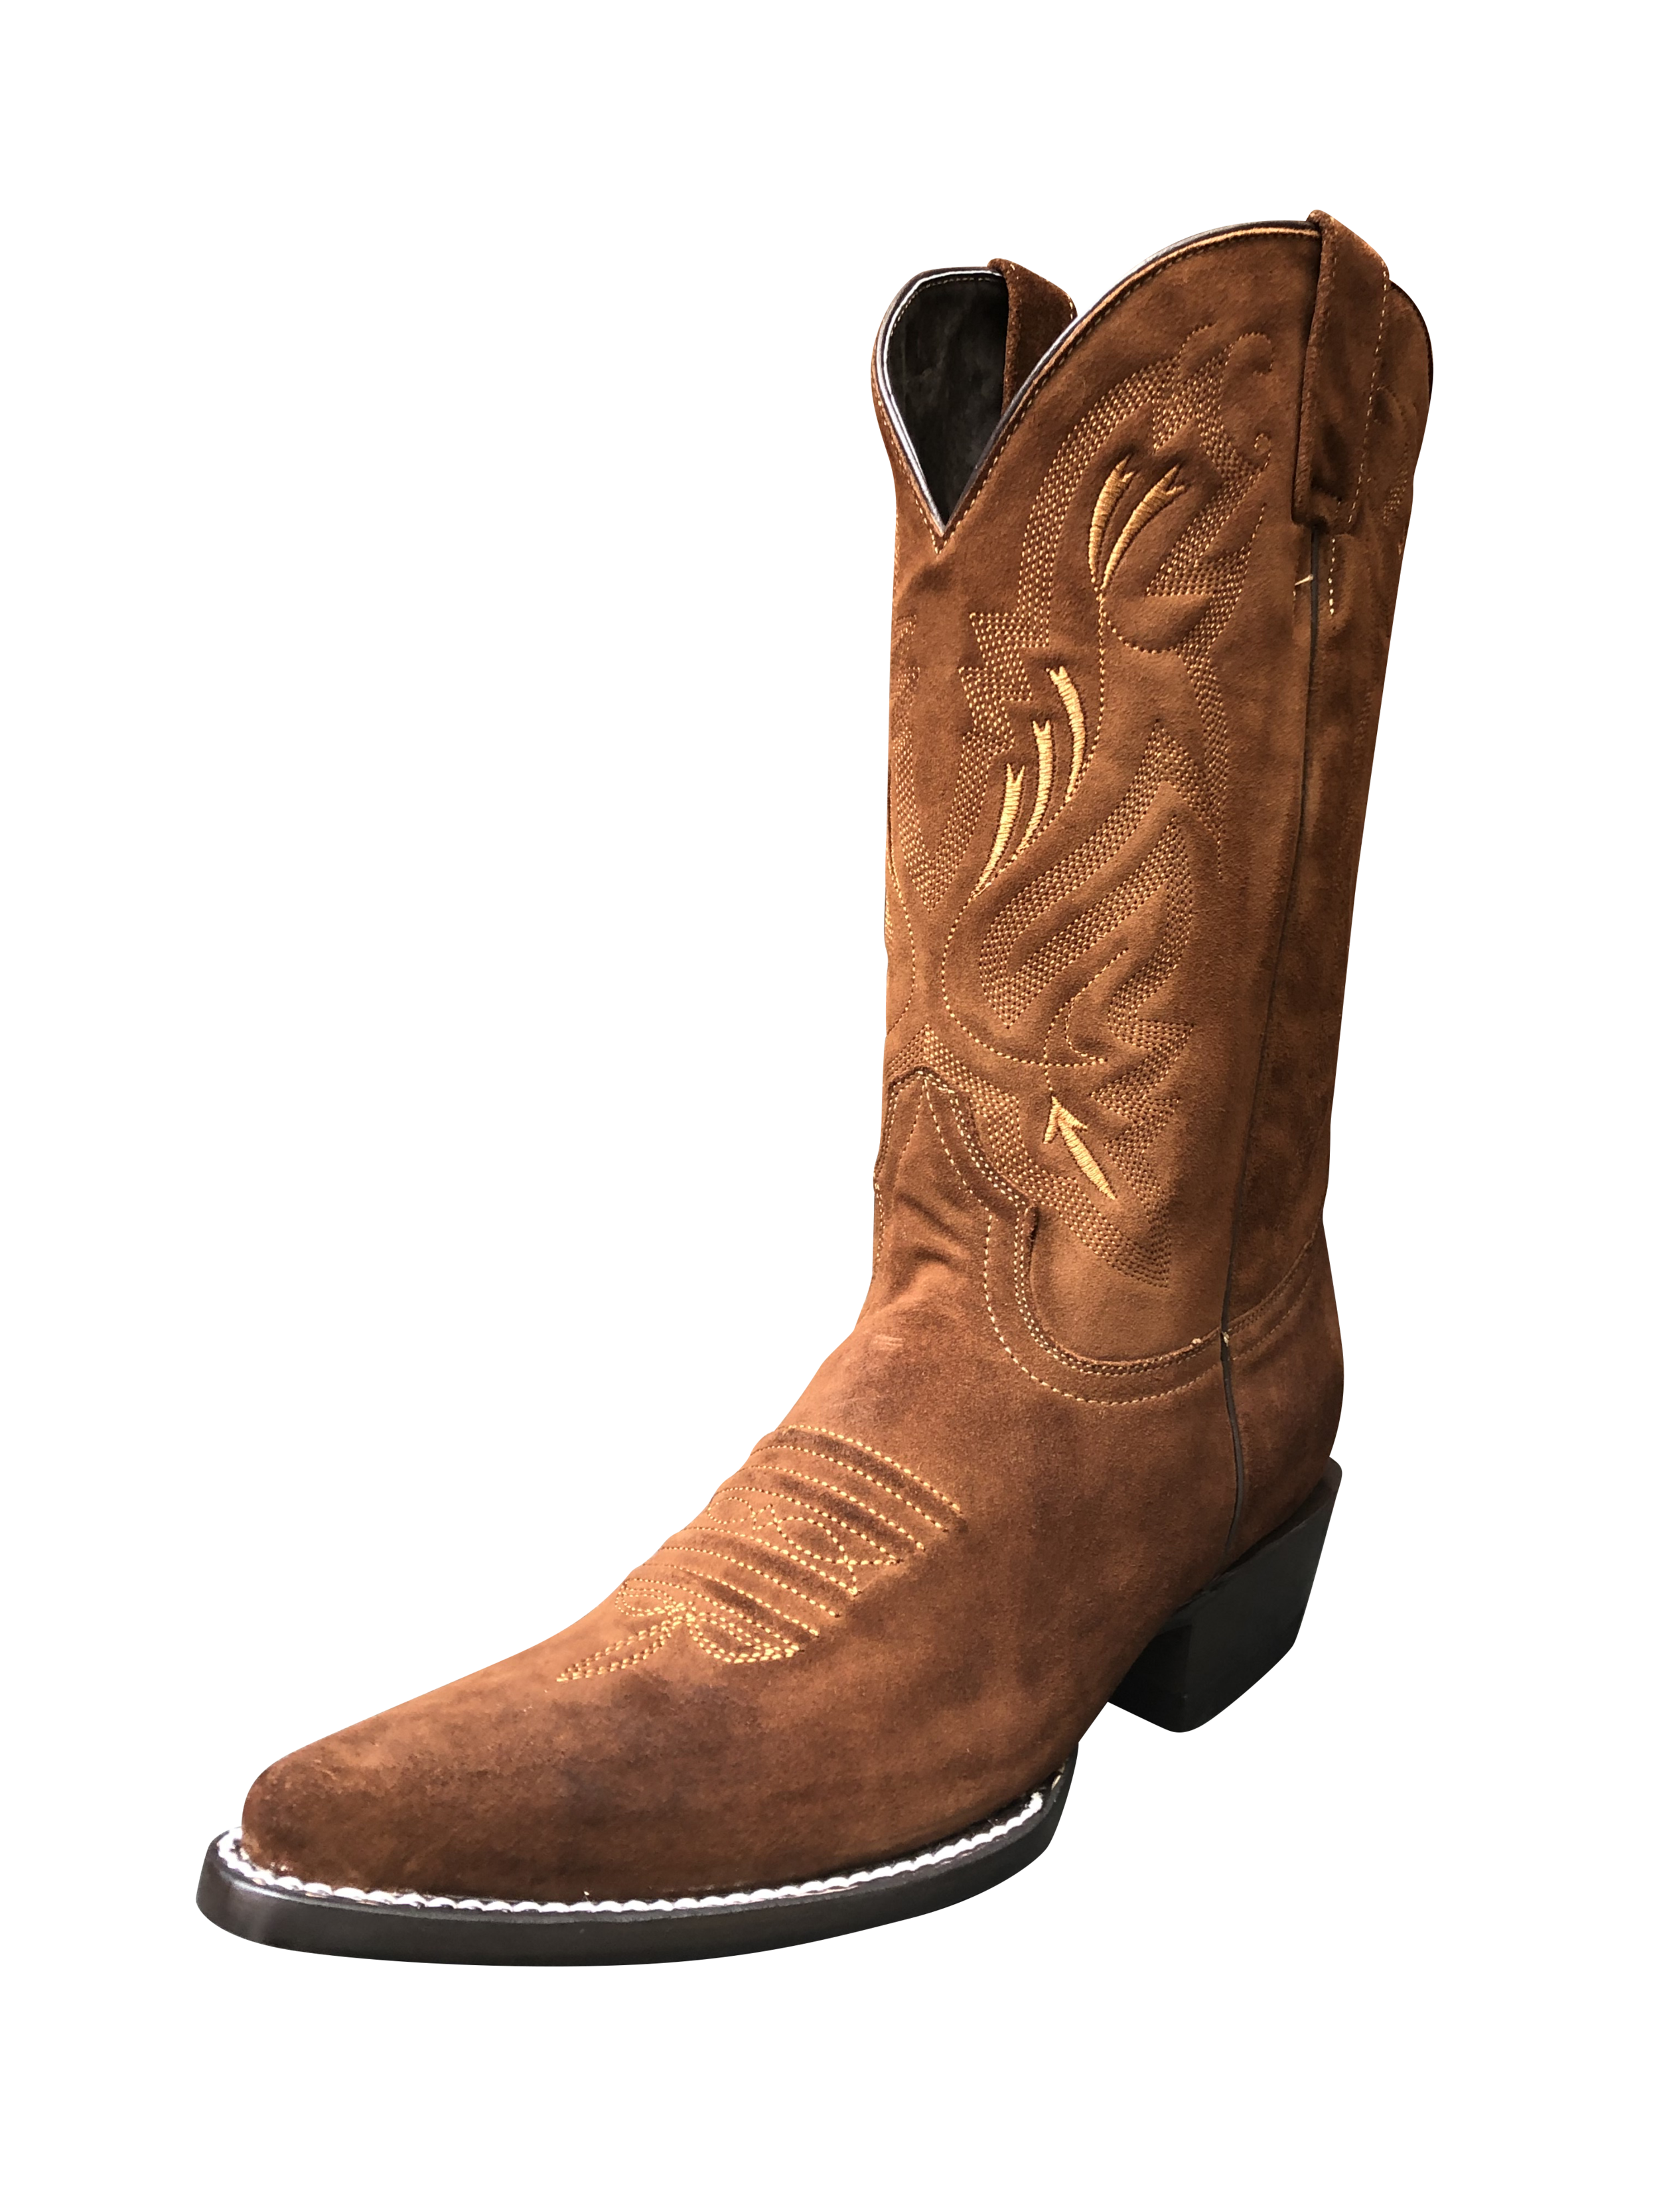 men's suede cowboy boots